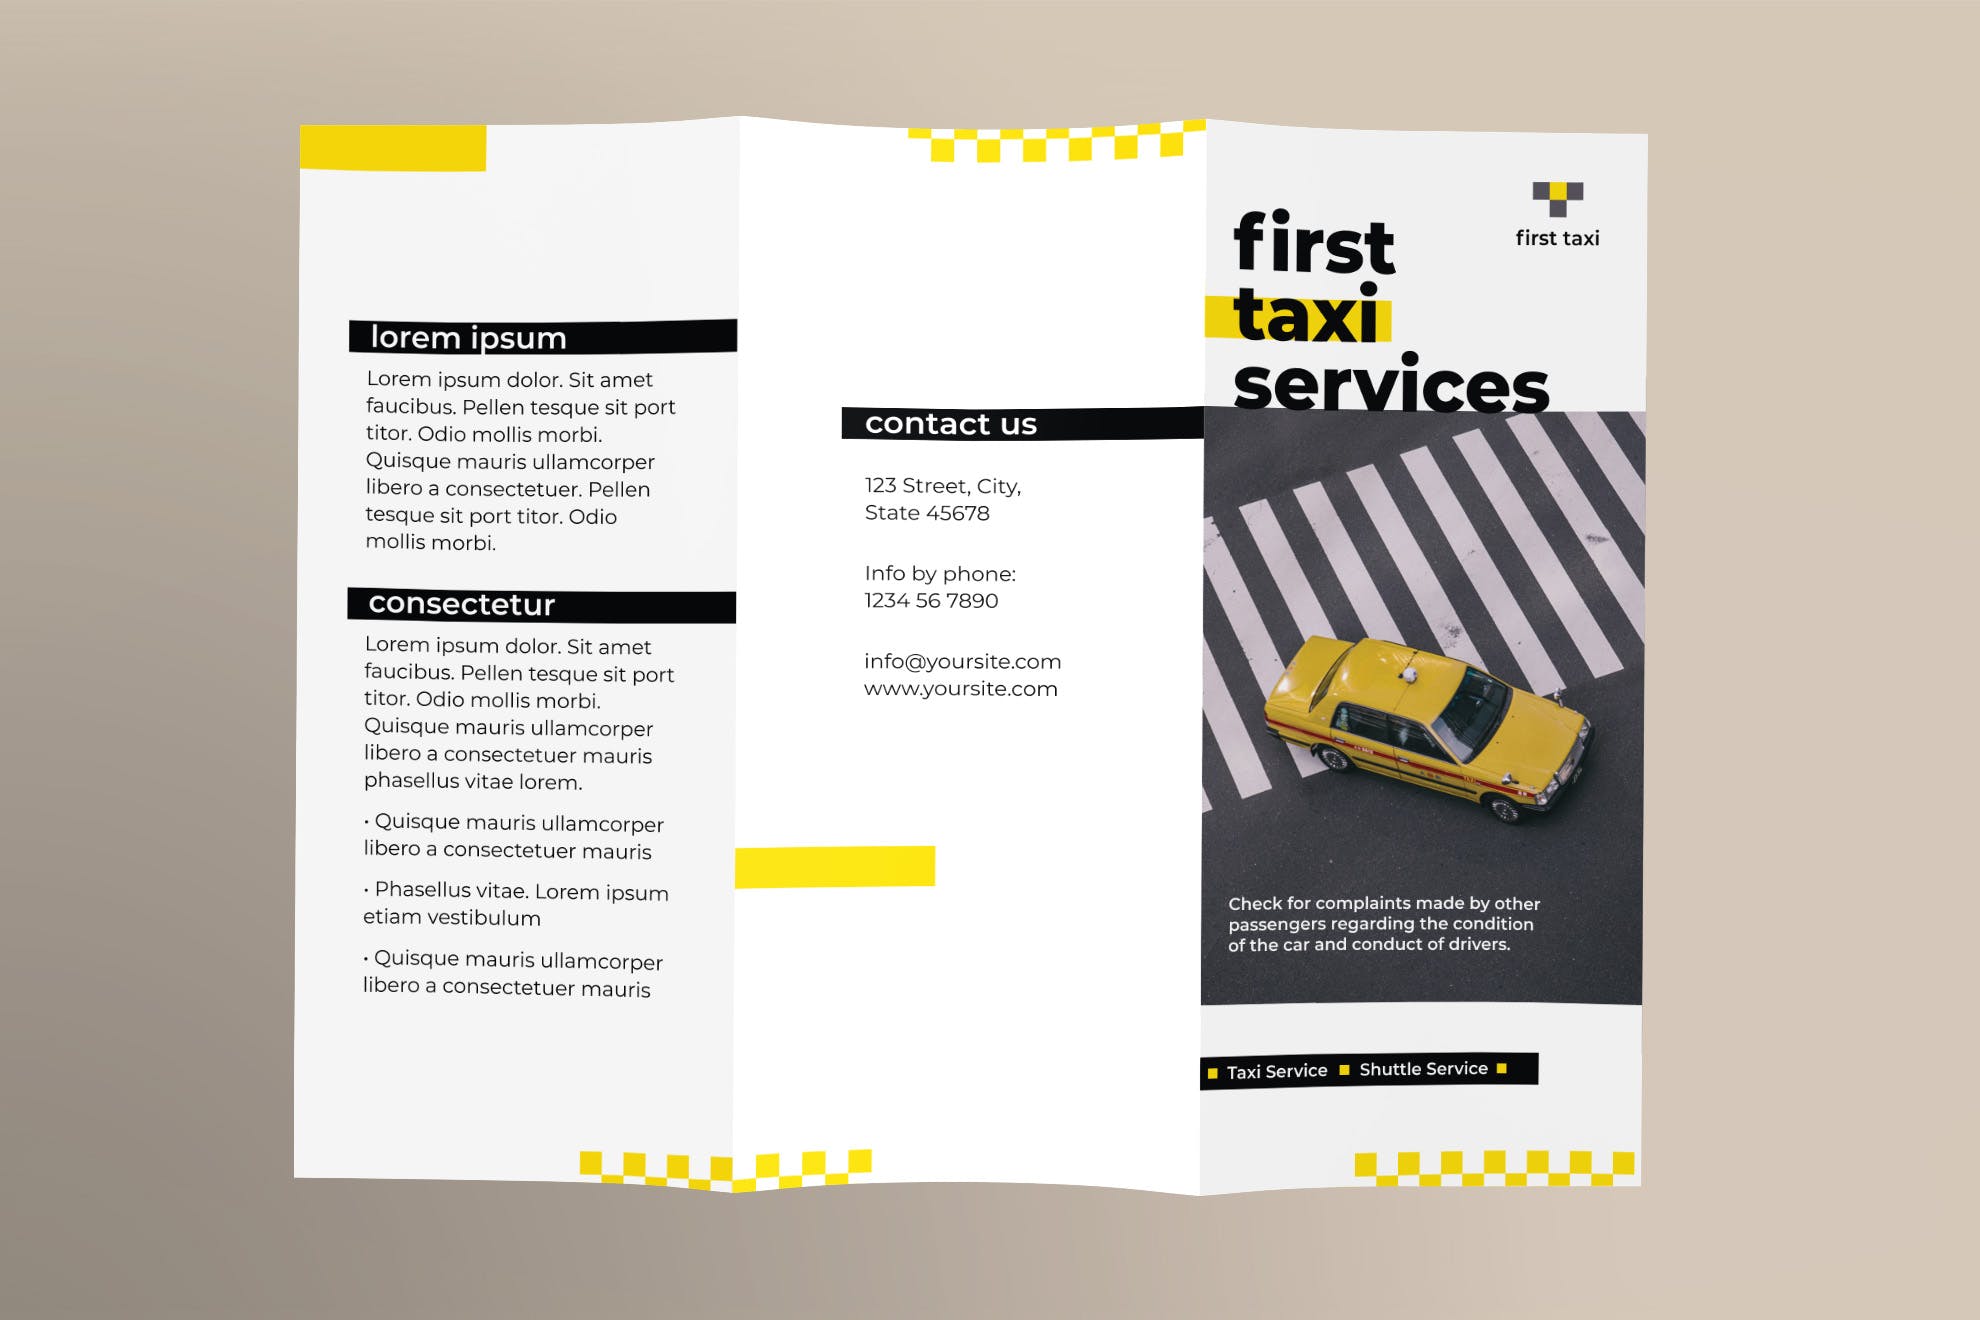 出租车/网约车服务三折页传单设计模板 Taxi Services Brochure Trifold插图(1)